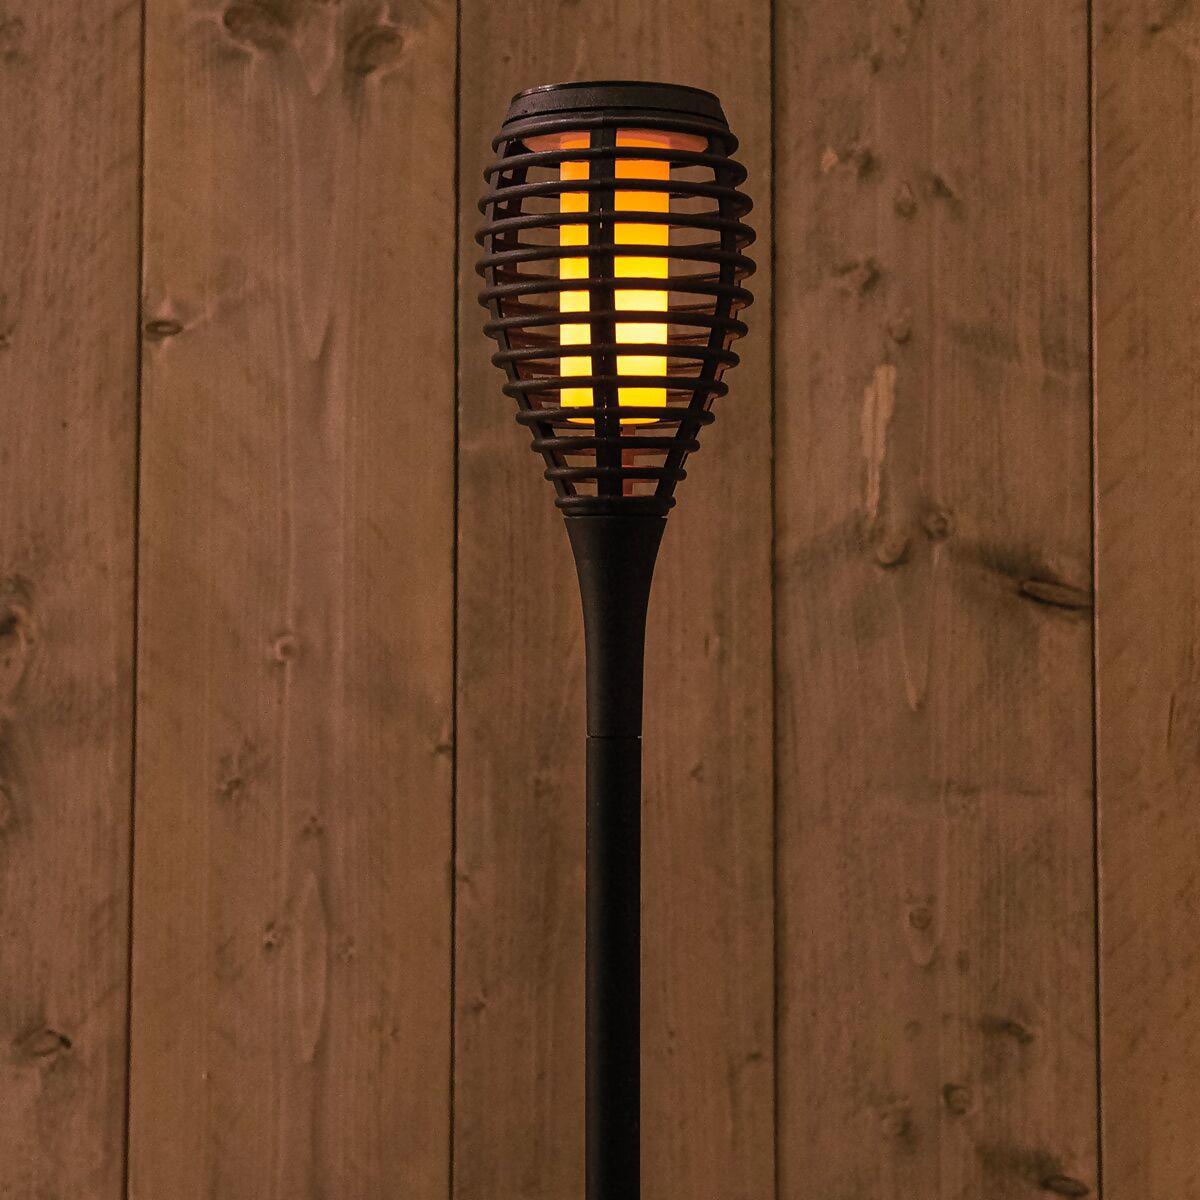 mit Flammeneffekt, 61cm, Gärtner kaufen online Fackel LED Pötschke bei Solar schwarz